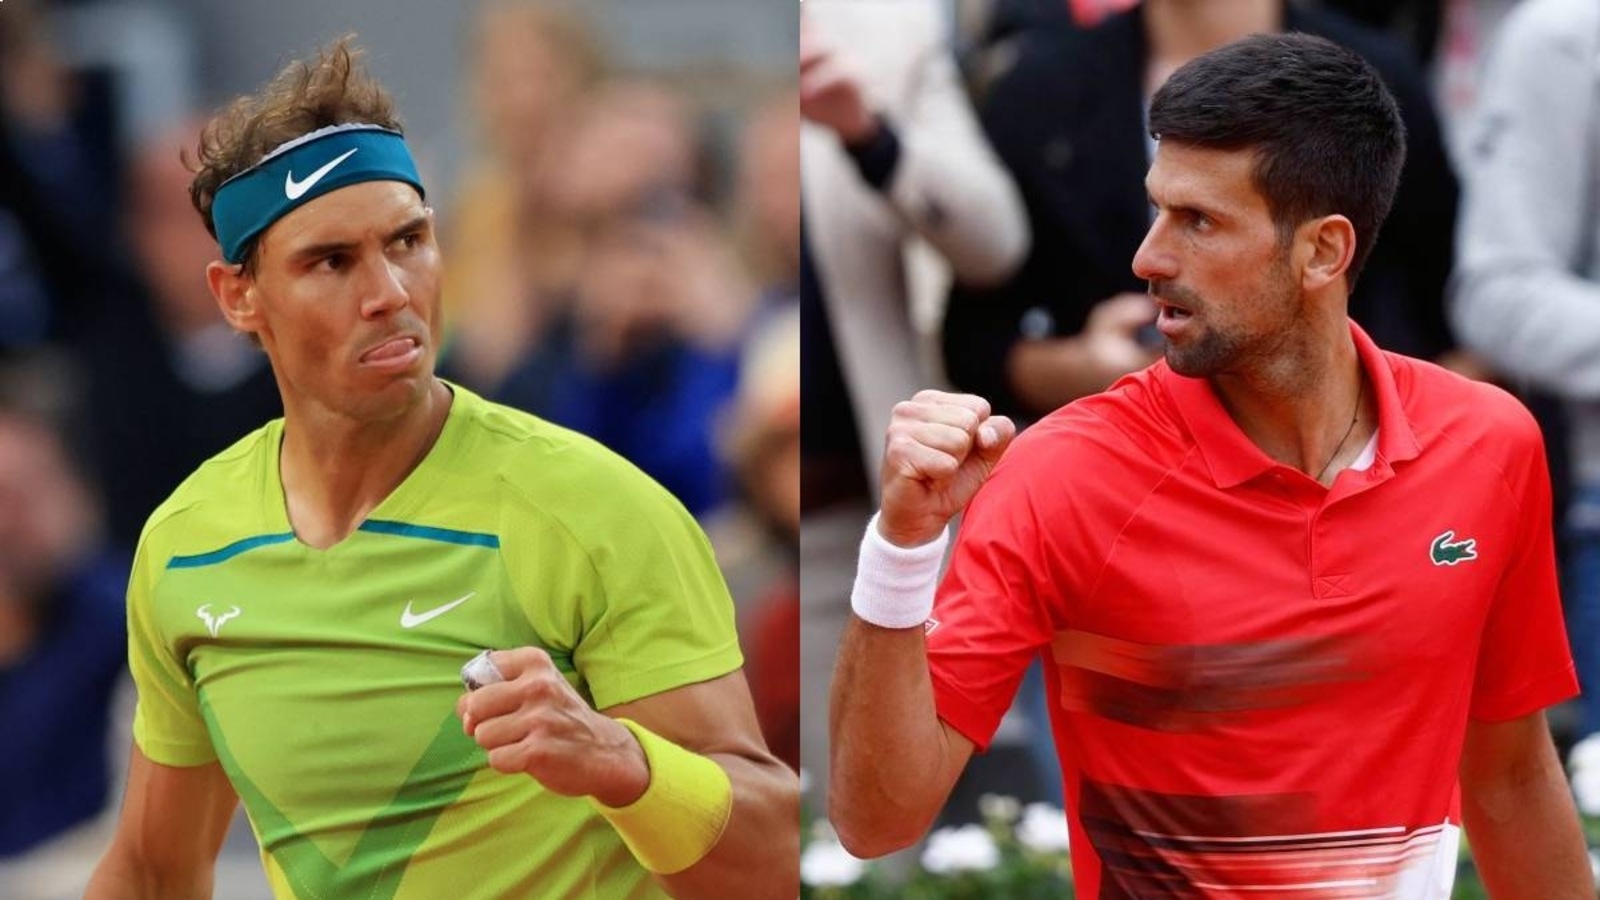 French Open 2022 Live Score, Novak Djokovic vs Rafael Nadal: Can Rafa stop Djokovic’s march to 21st Grand Slam?